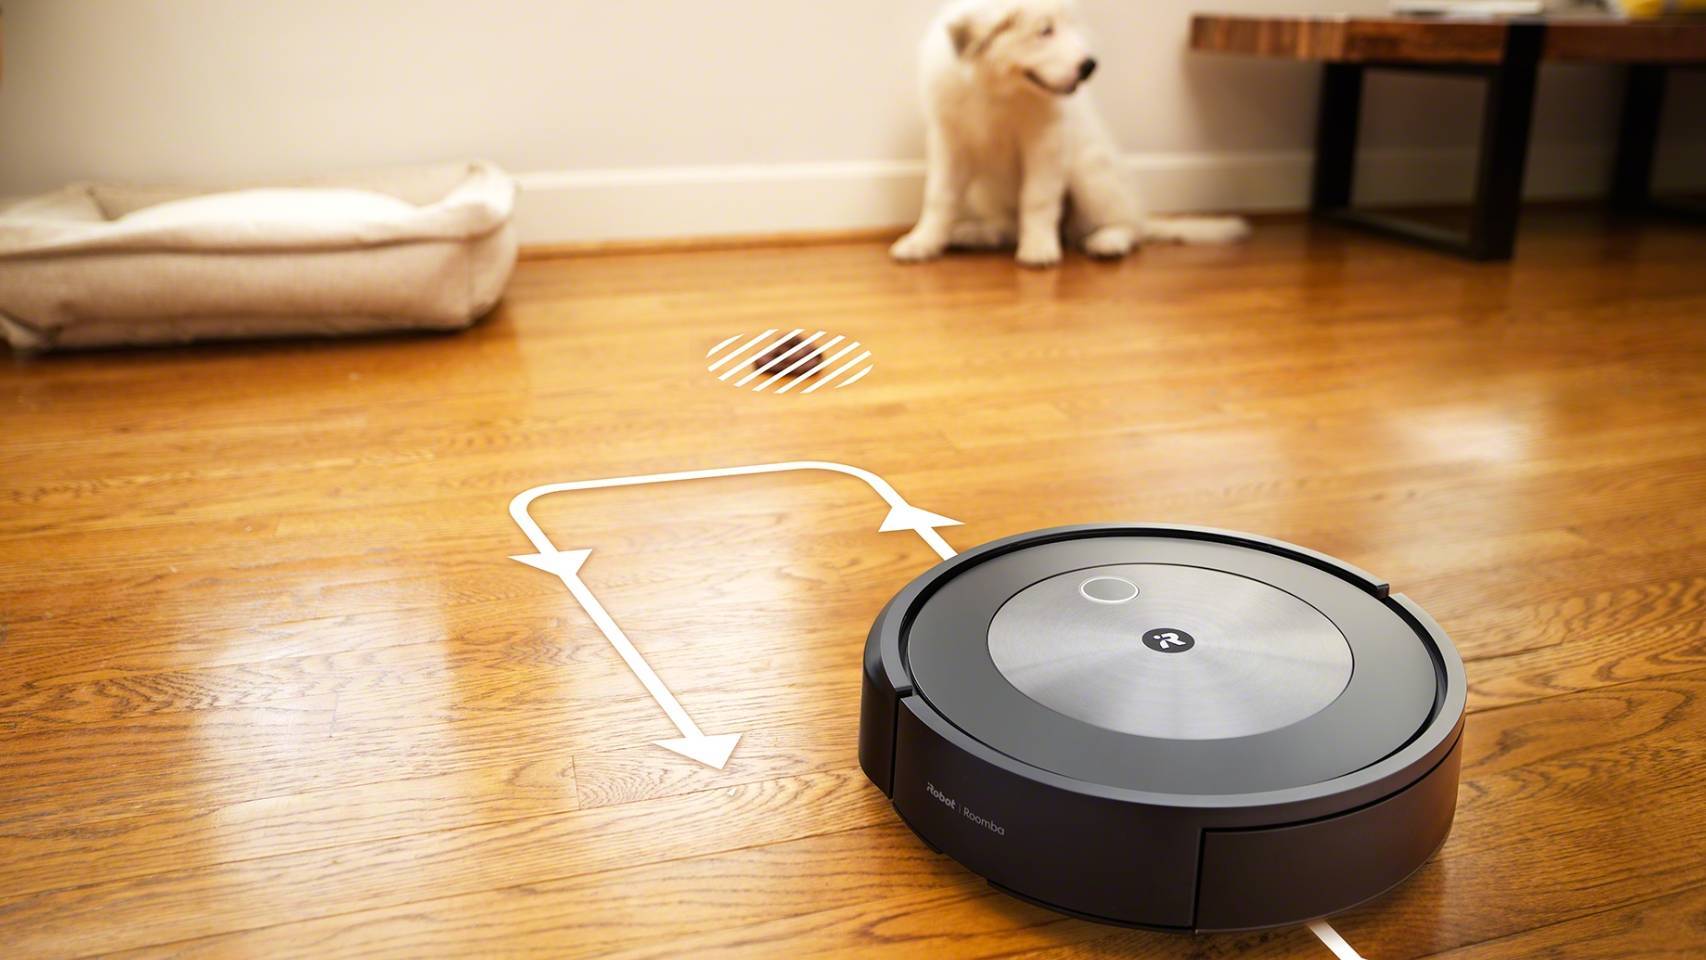 Llega la Roomba j7+, el robot aspirador que identifica los